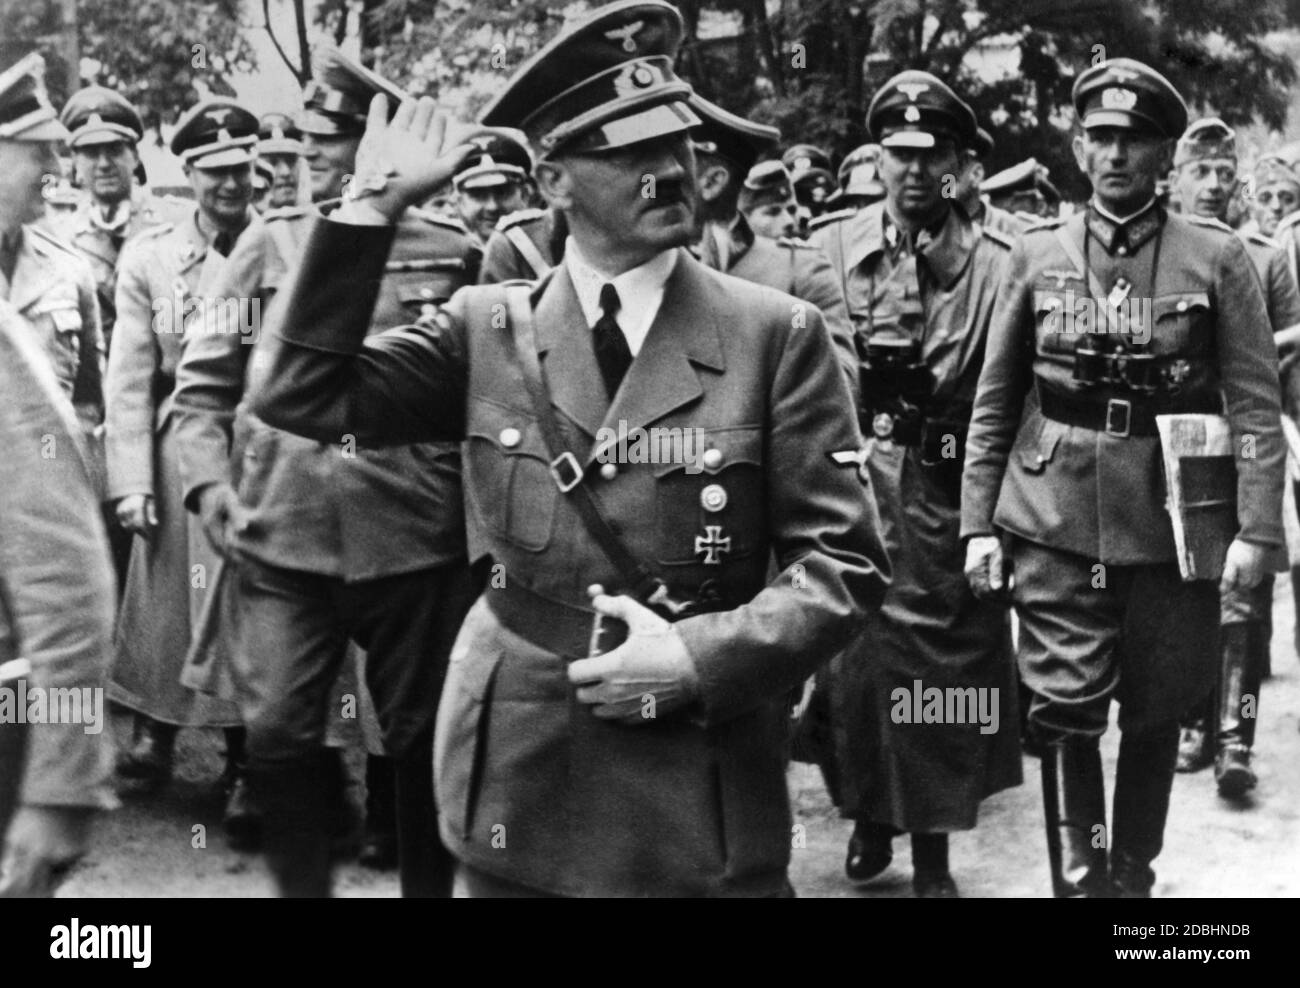 "Adolf Hitler und links hinter ihm Feldmarschall und Chef von OKW Wilhelm Keitel in Frankreich während des Westfeldzugs. Zu dieser Zeit prägte Keitel, der im weiteren Verlauf des Krieges auch "Lakaitel" in Wehrmachtskreisen genannt wurde, den Begriff "der größte Kommandant aller Zeiten". Stockfoto